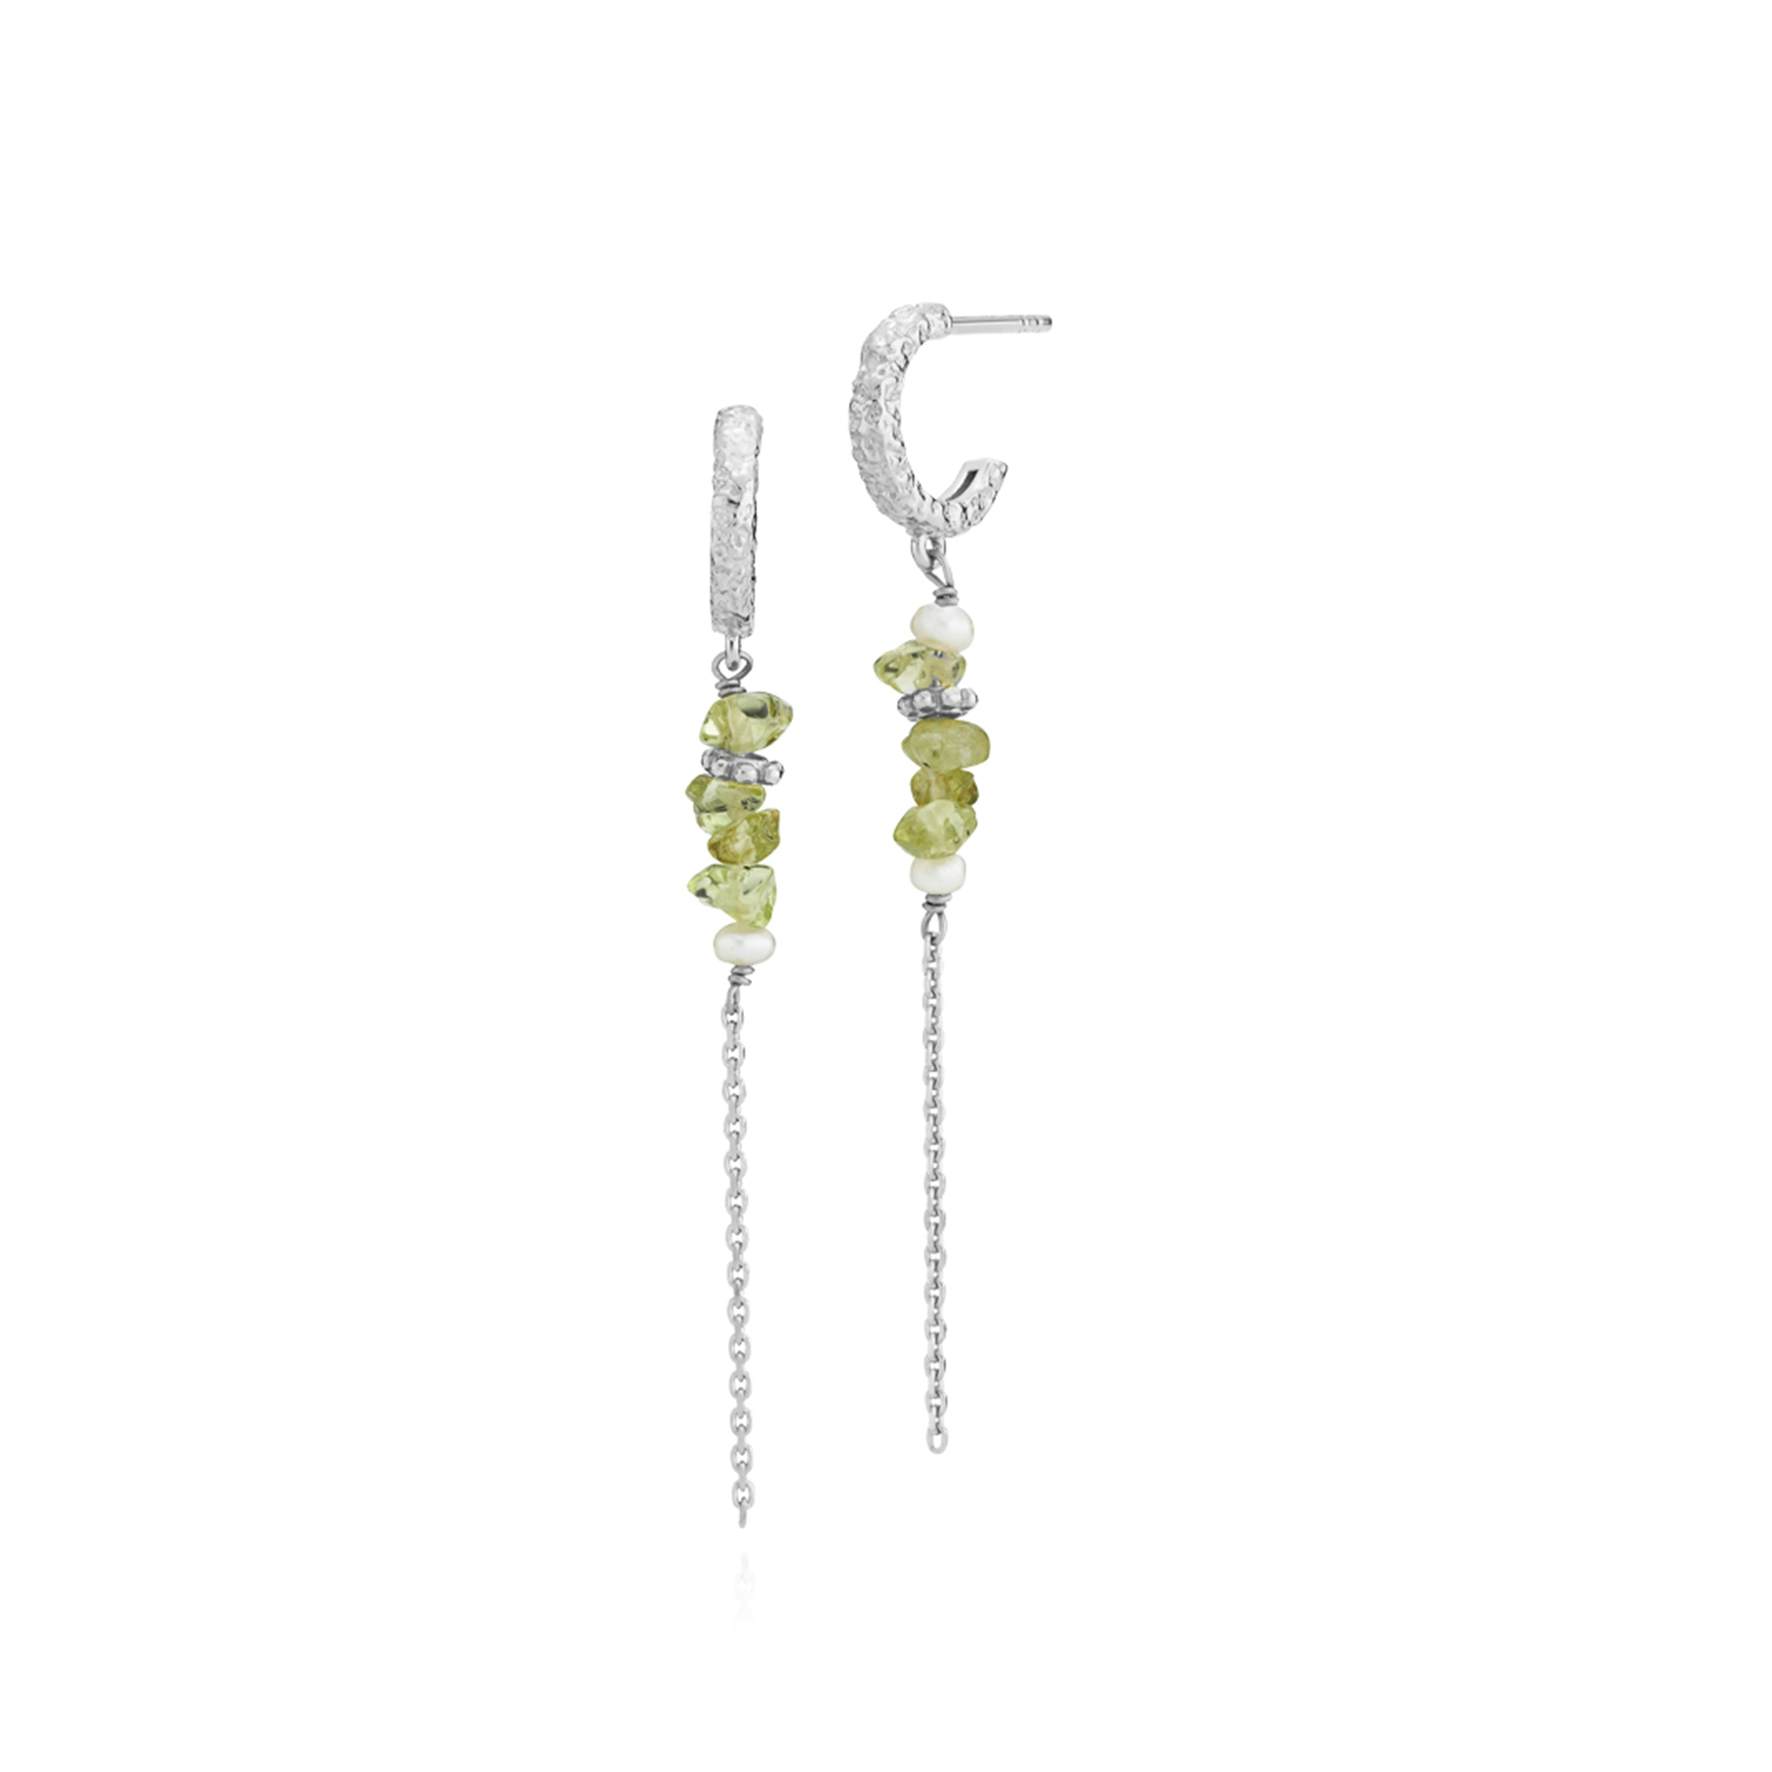 Beach Green Earrings from Sistie in Silver Sterling 925